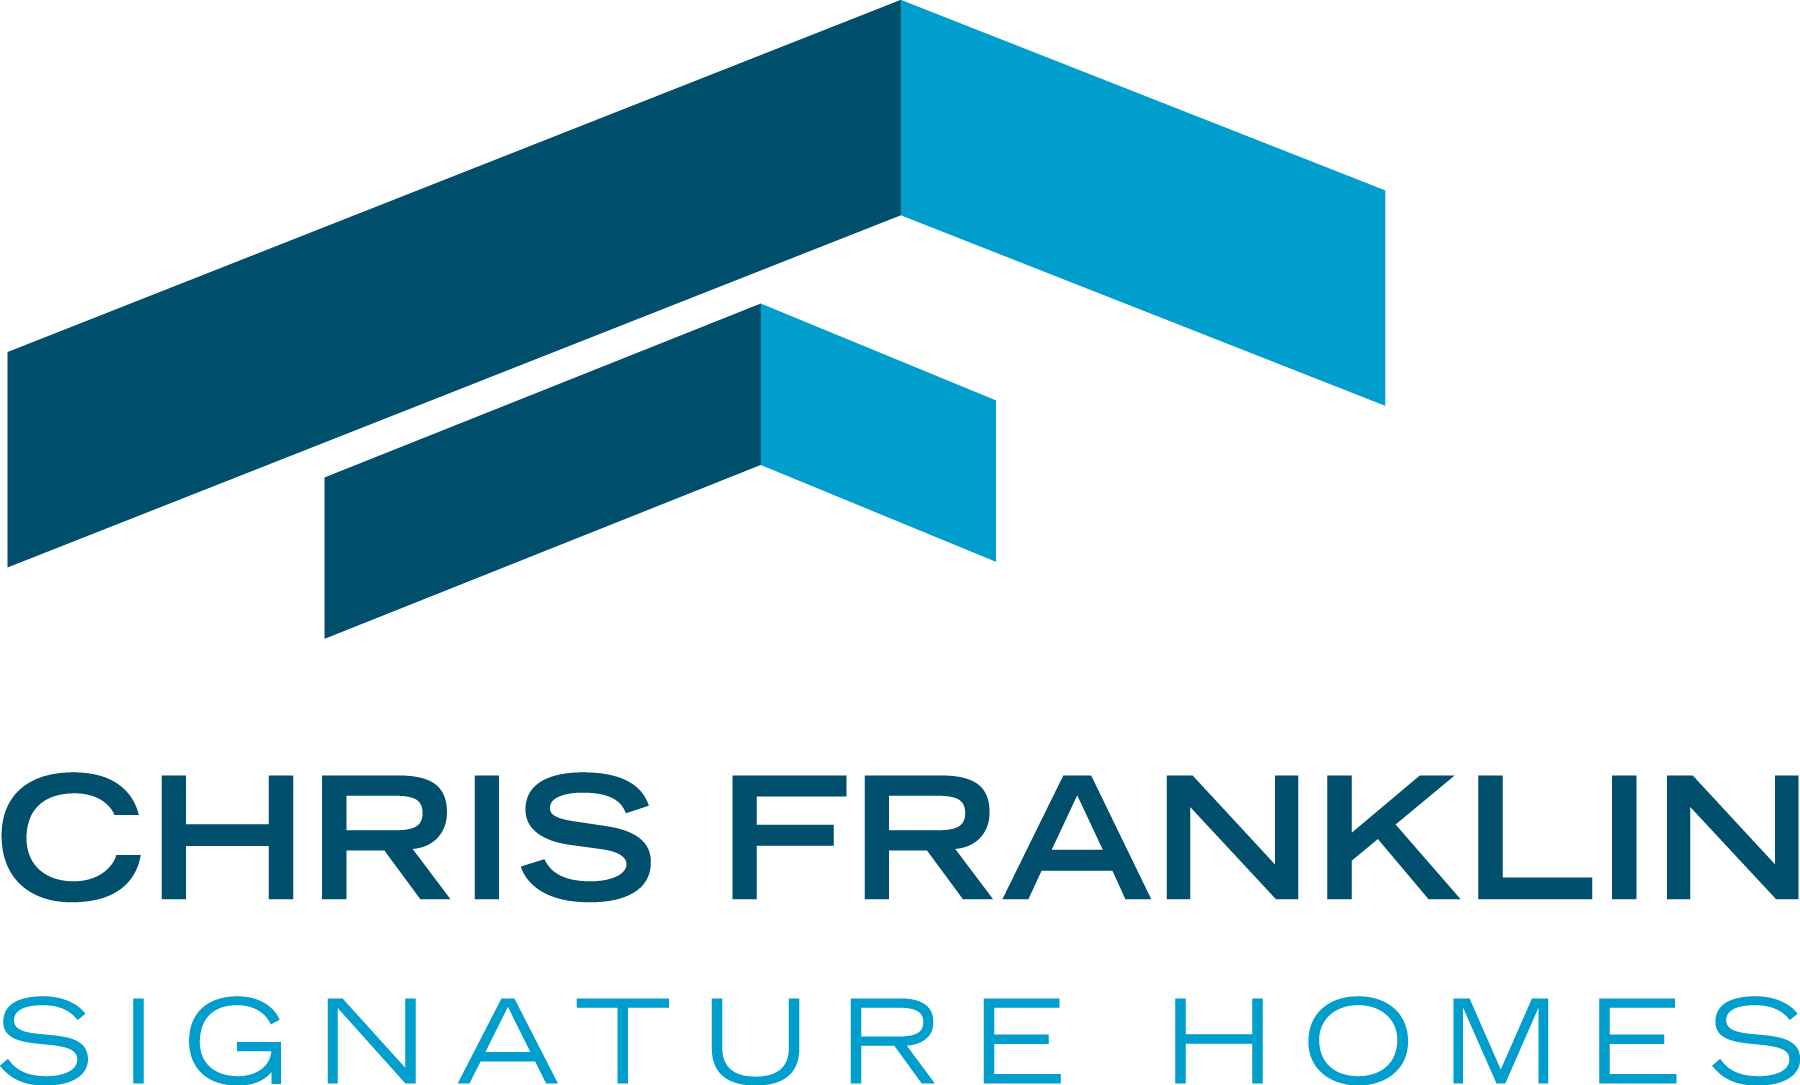 Chris Franklin Signature Homes